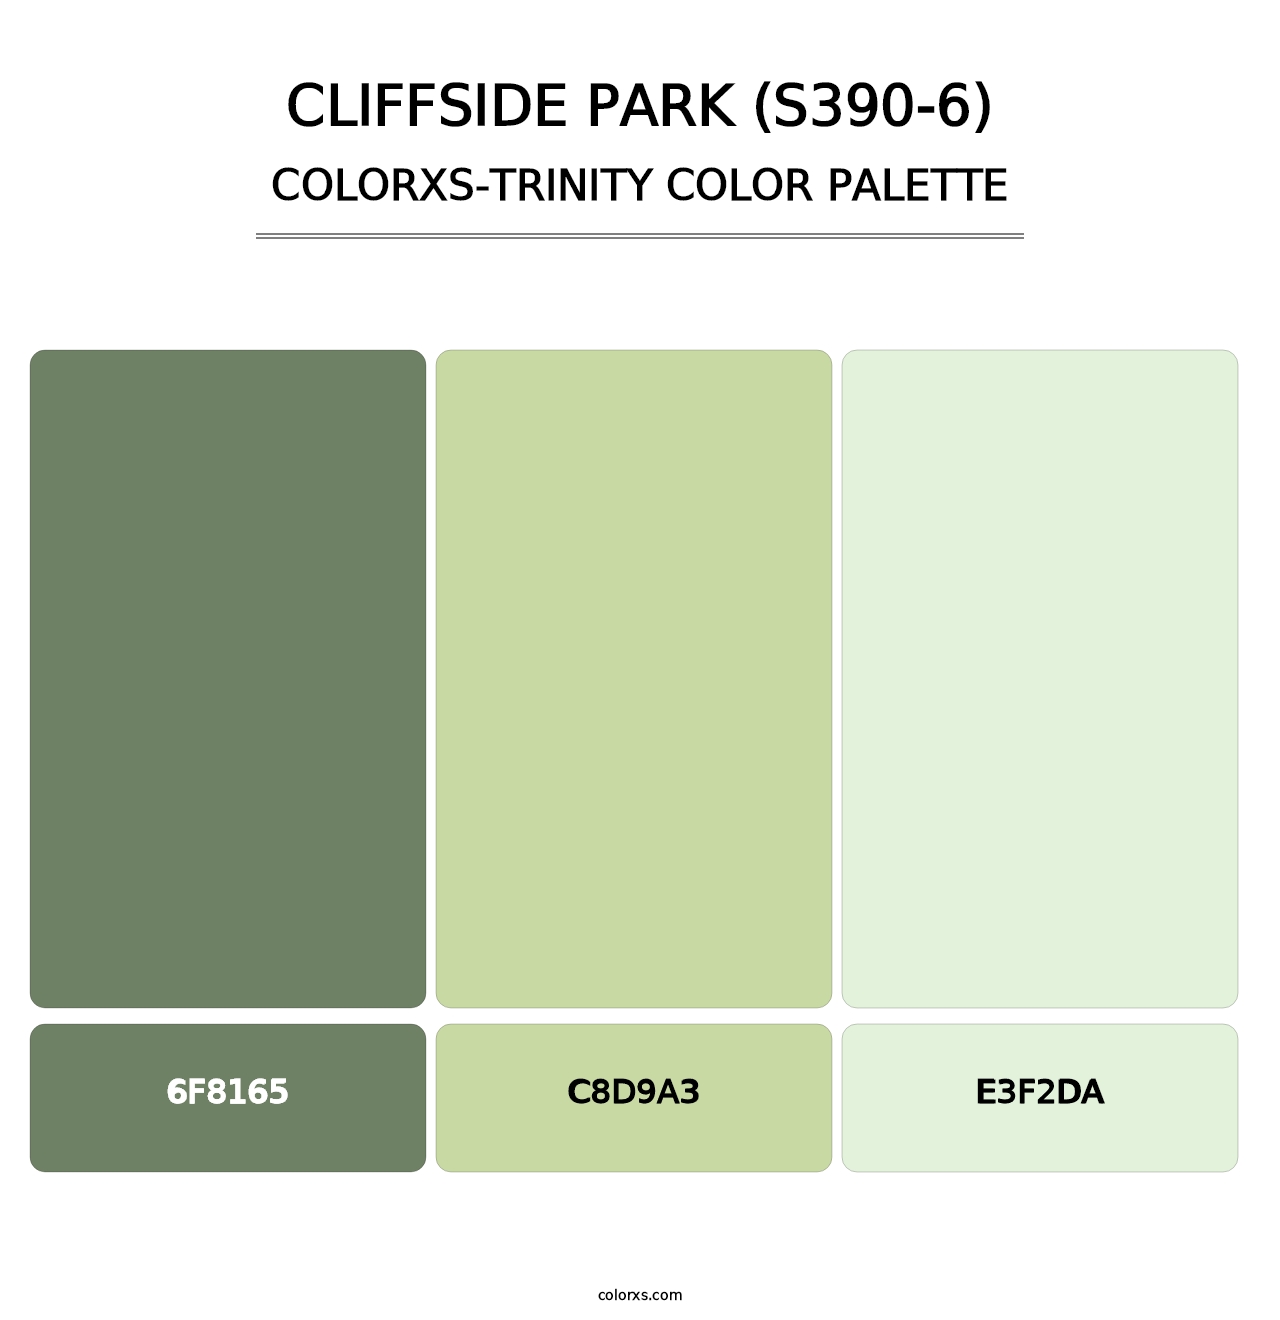 Cliffside Park (S390-6) - Colorxs Trinity Palette